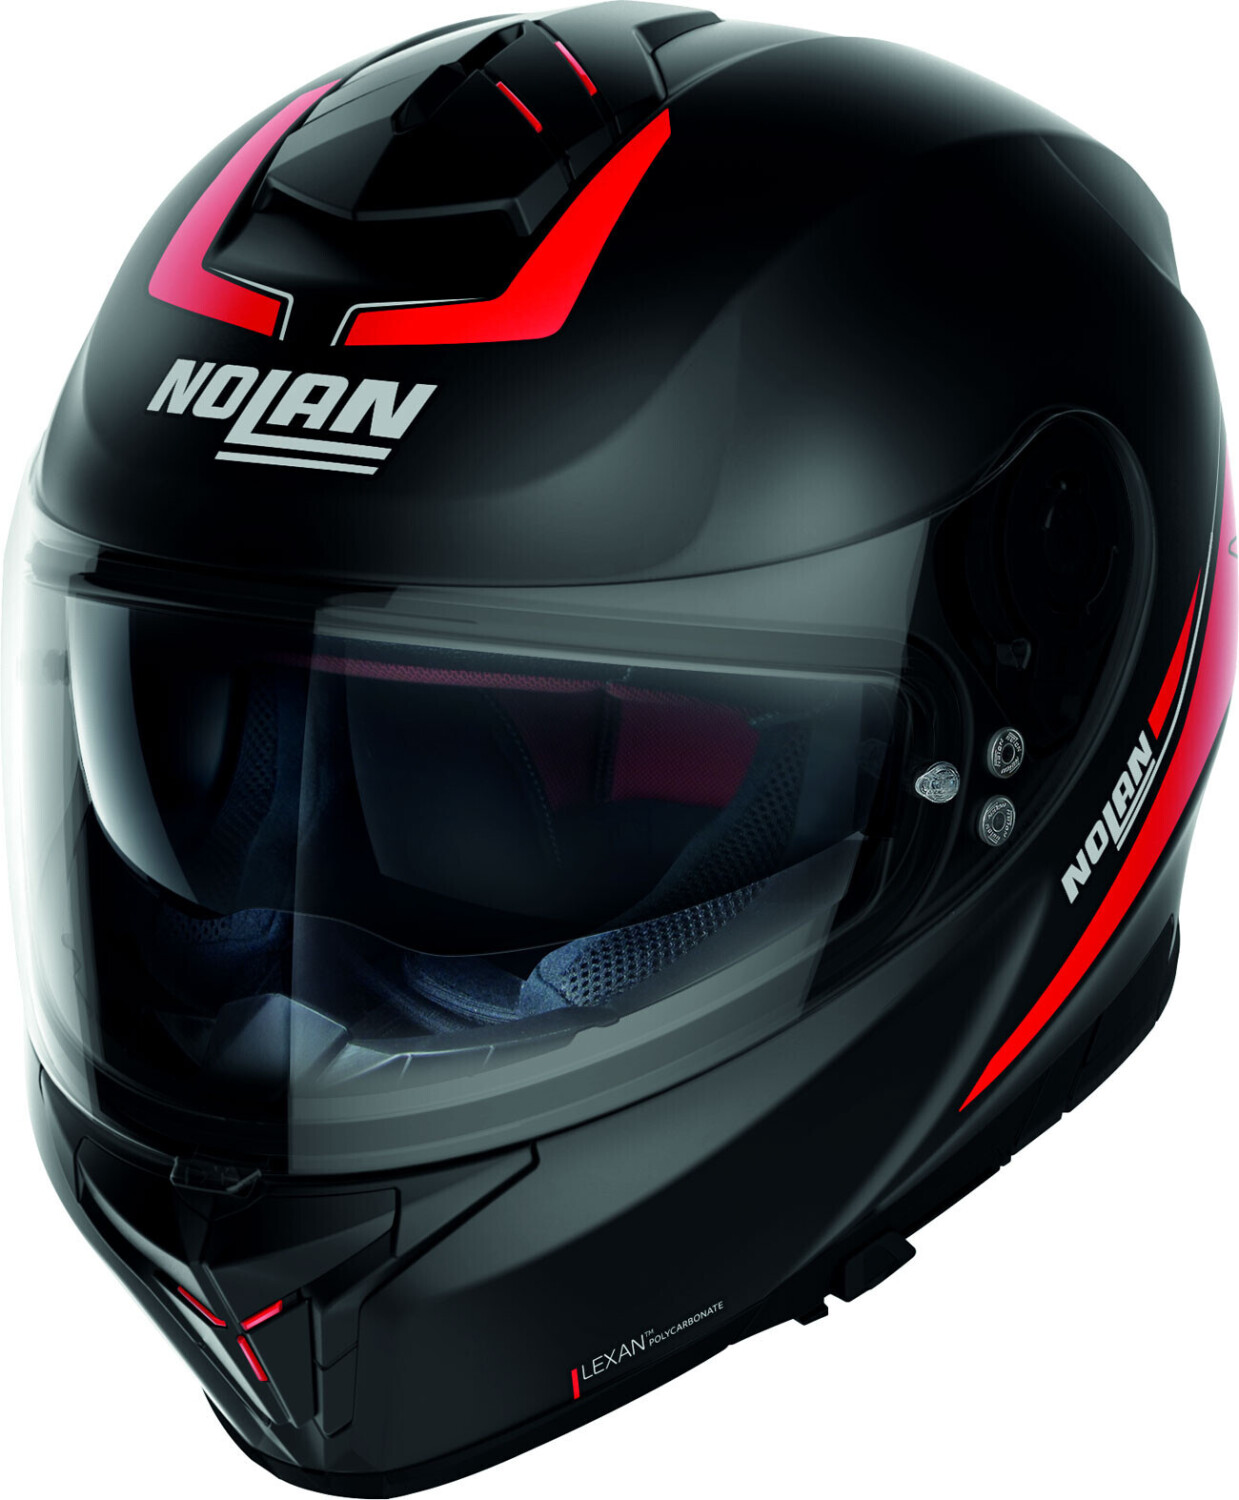 Photos - Motorcycle Helmet Nolan N80-8 Staple Flat Black/Red 